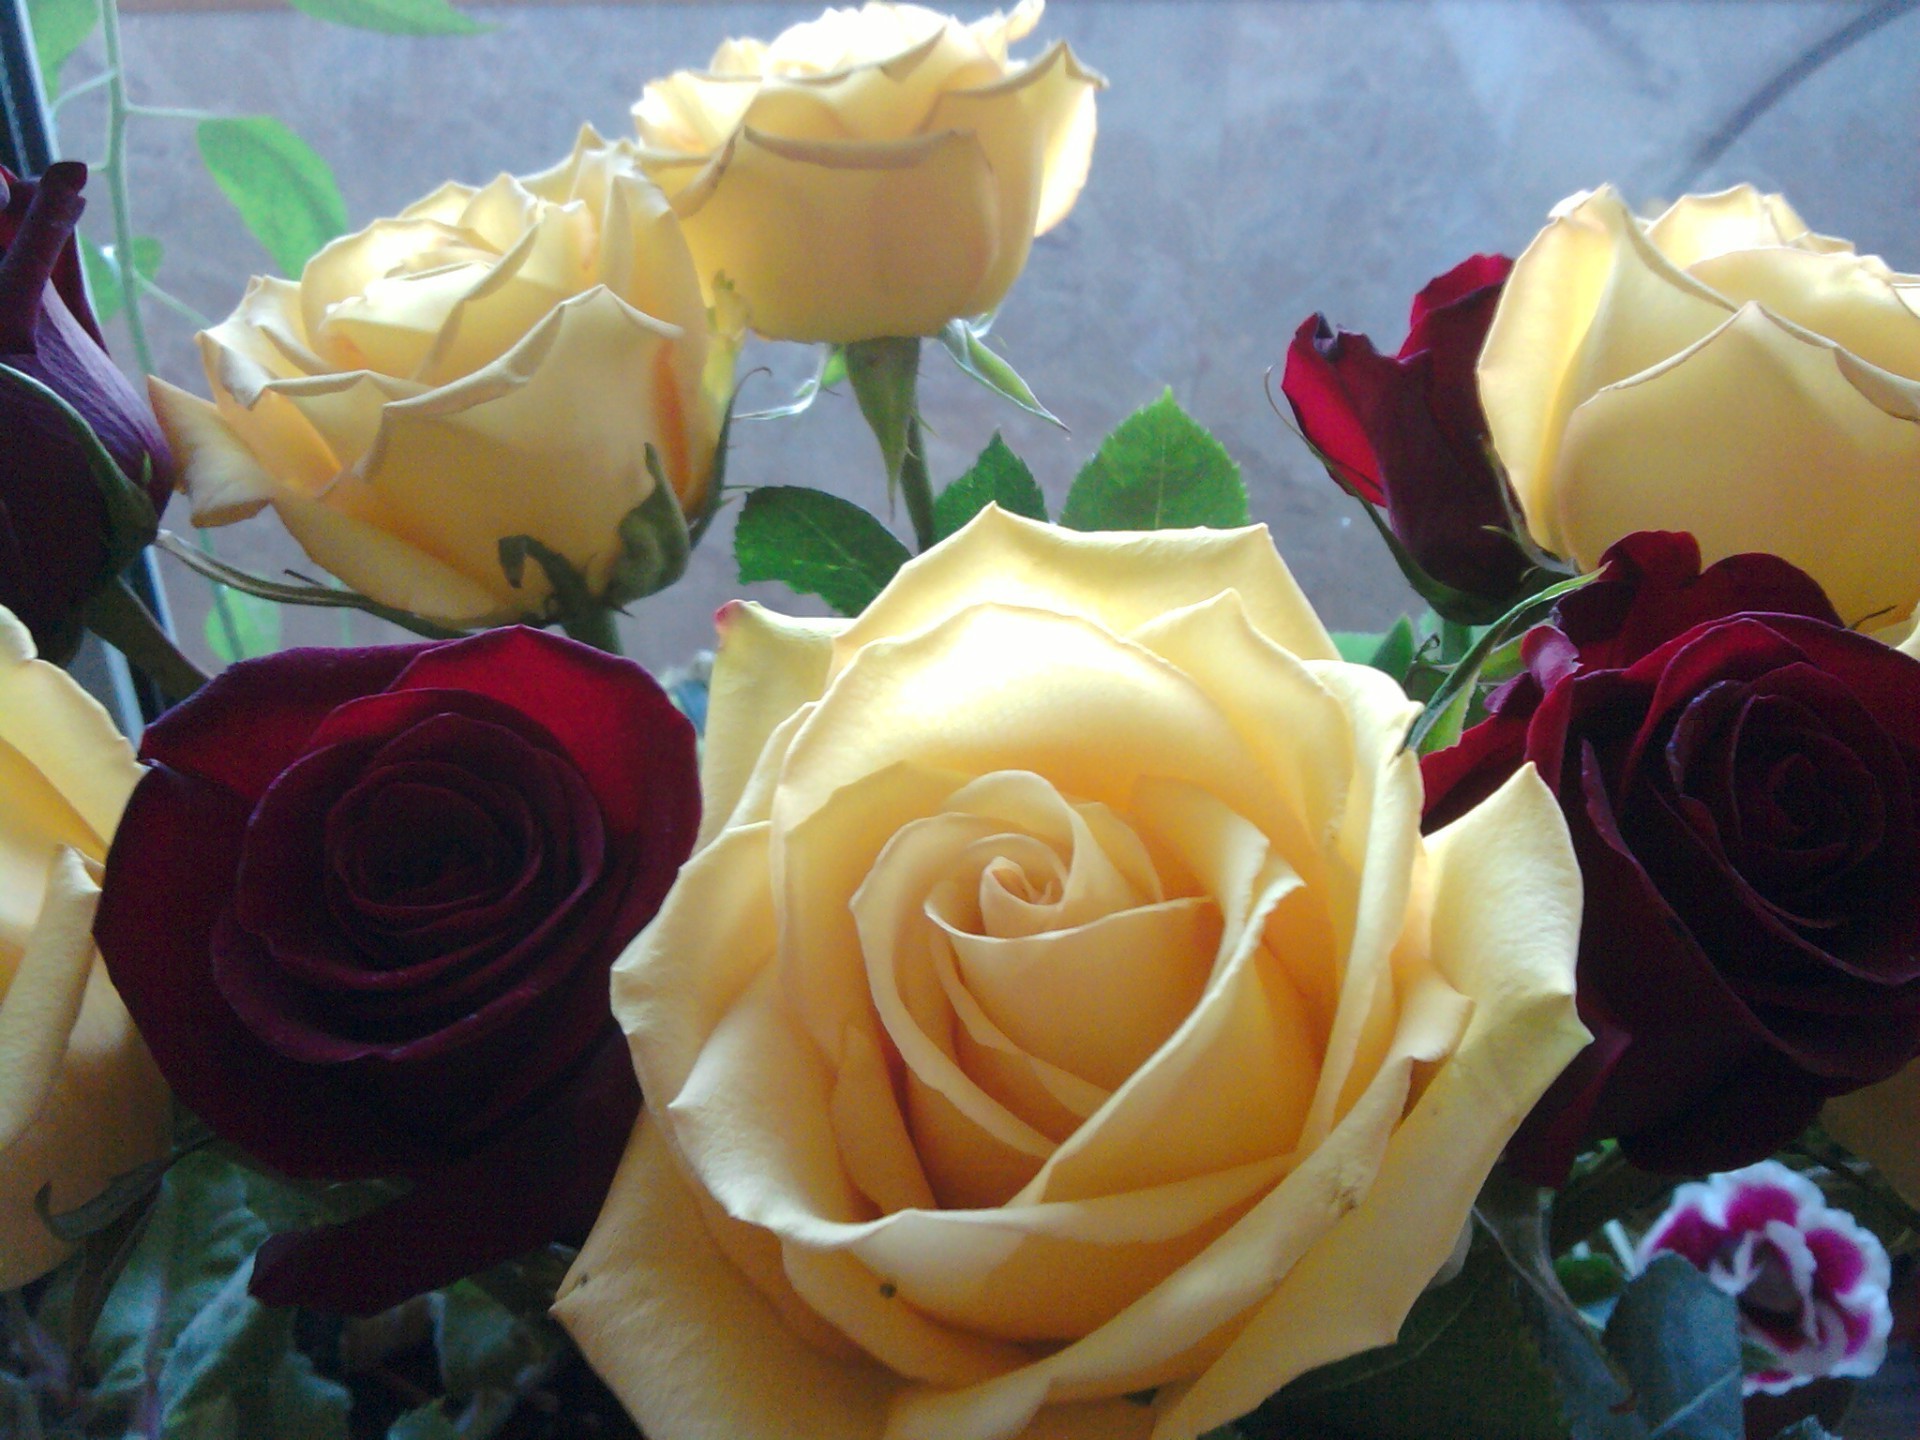 цветы роза свадьба цветок любовь романтика букет подарок лепесток невеста цветочные романтический юбилей брак день рождения блюминг украшения для новобрачных праздник дружище